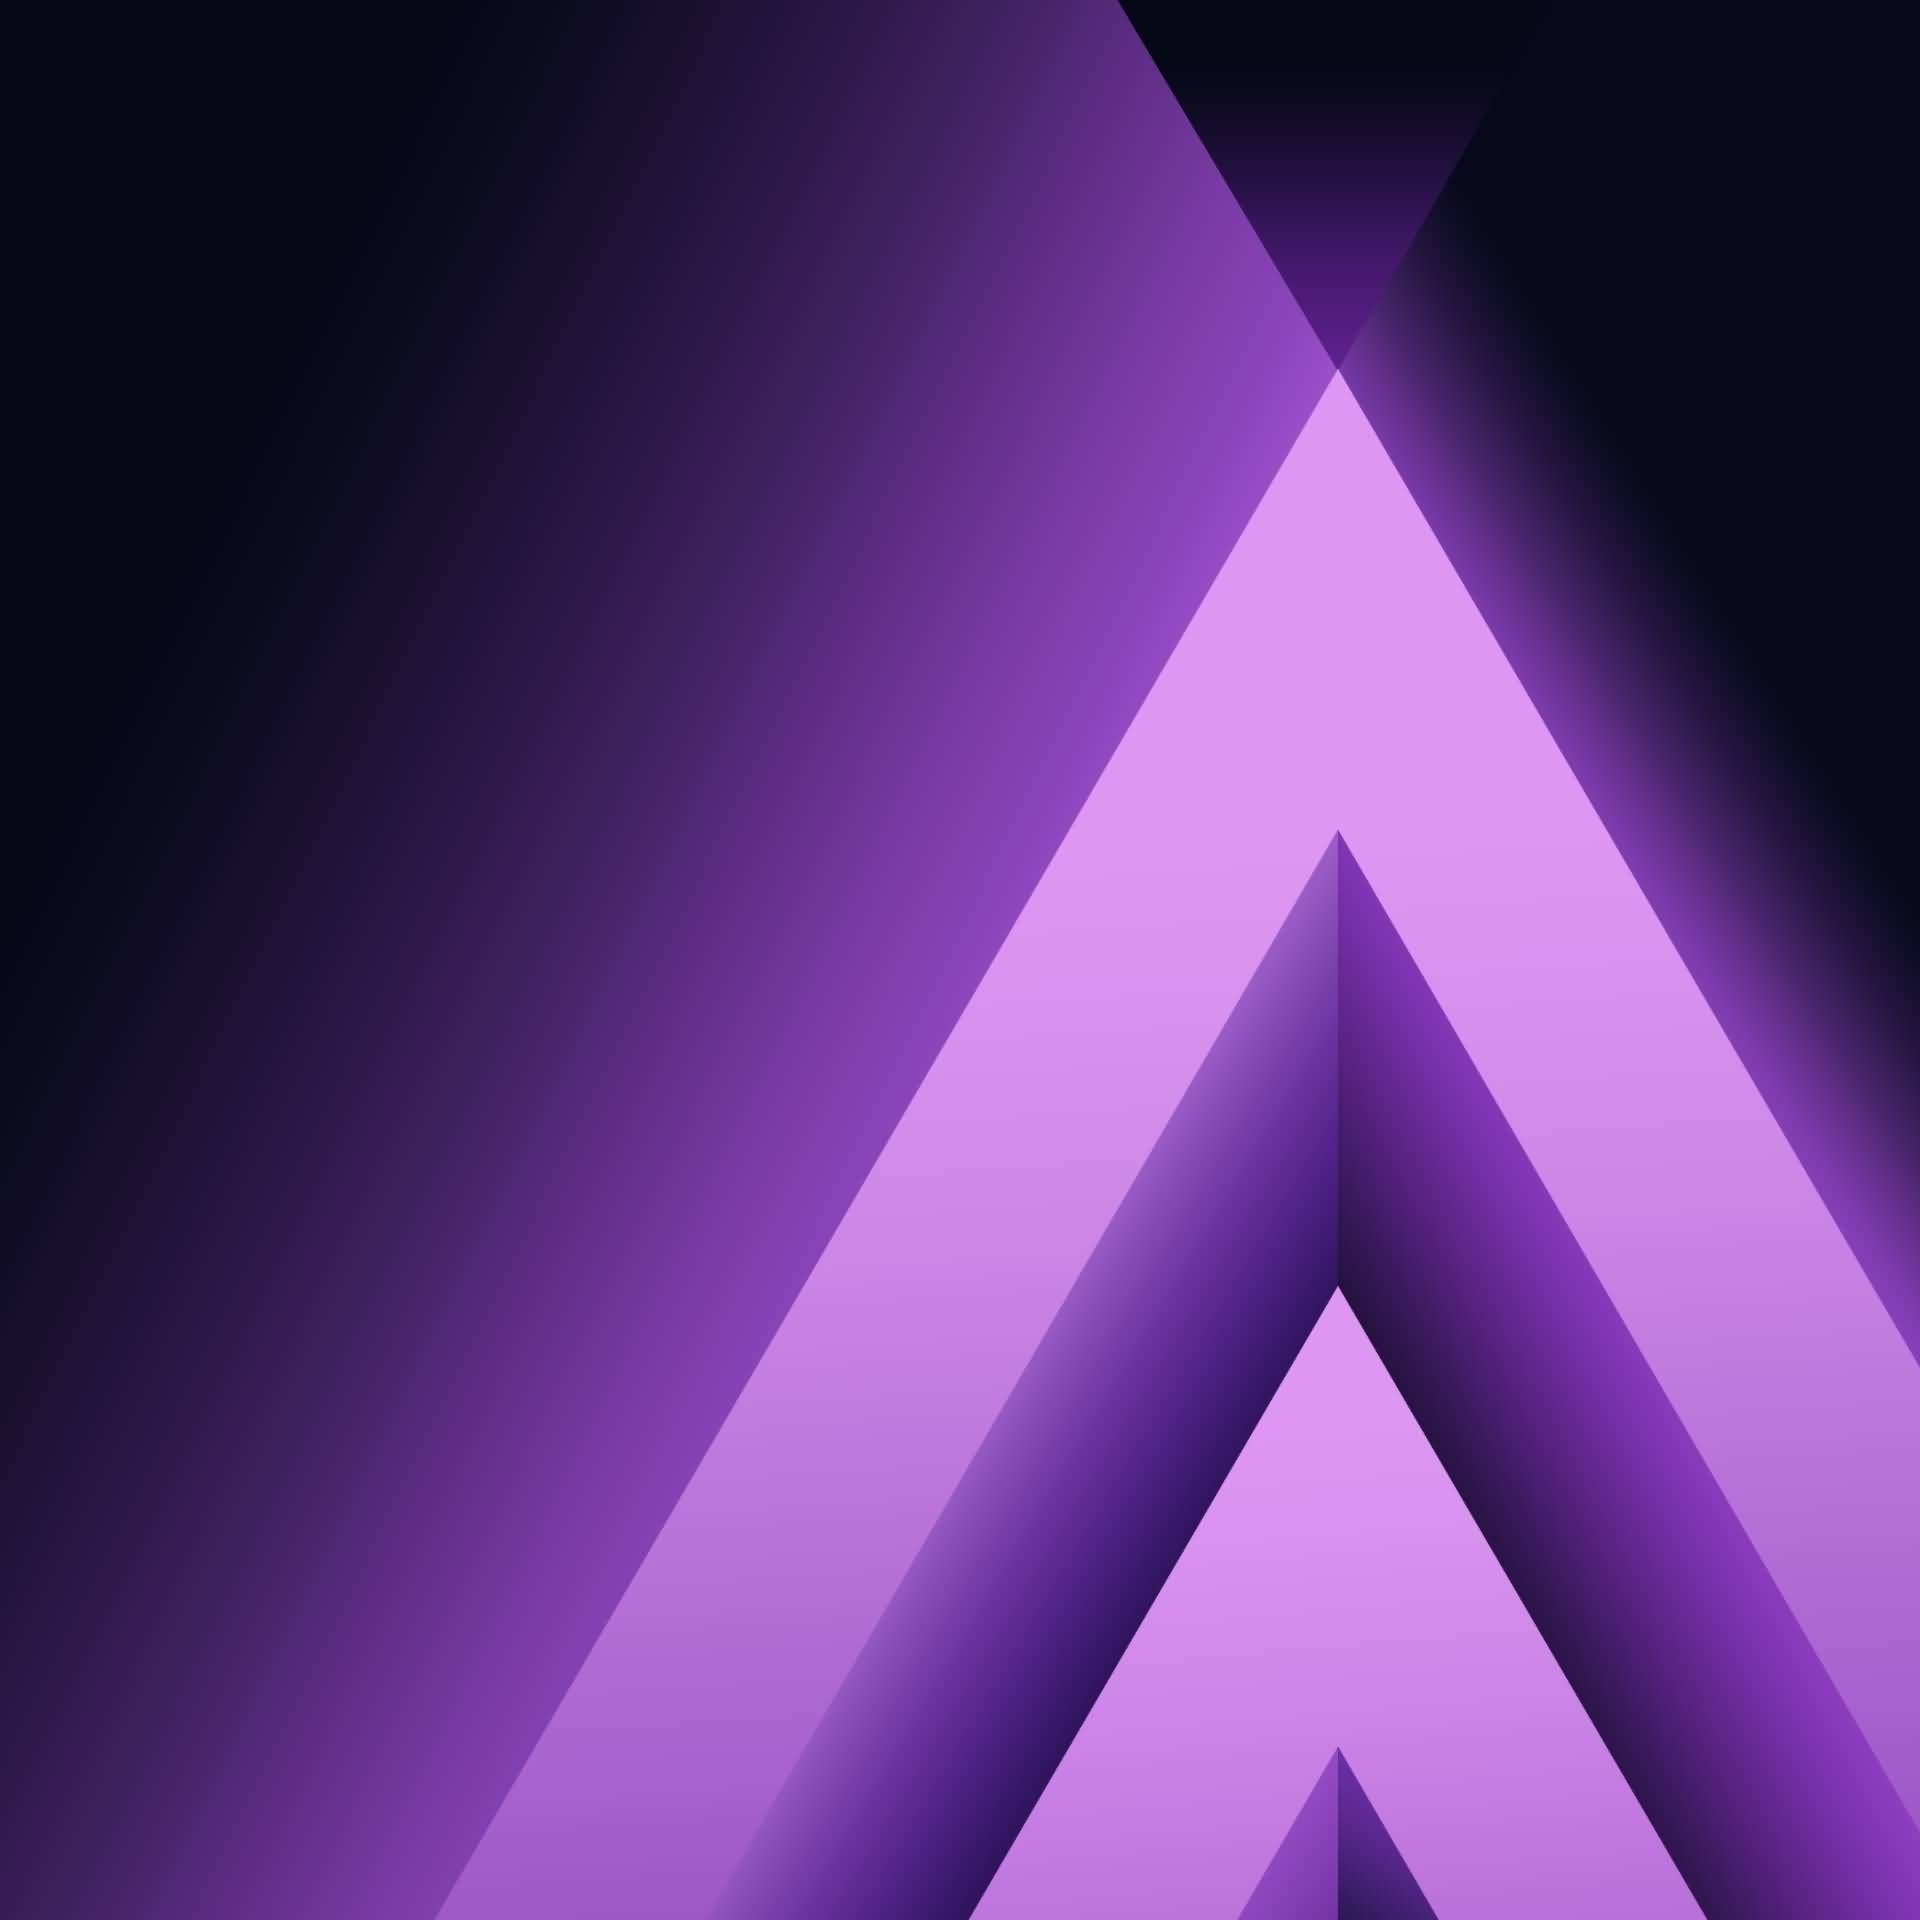 nuevo fondo de pantalla 2017 hd,violeta,azul,púrpura,ligero,lila